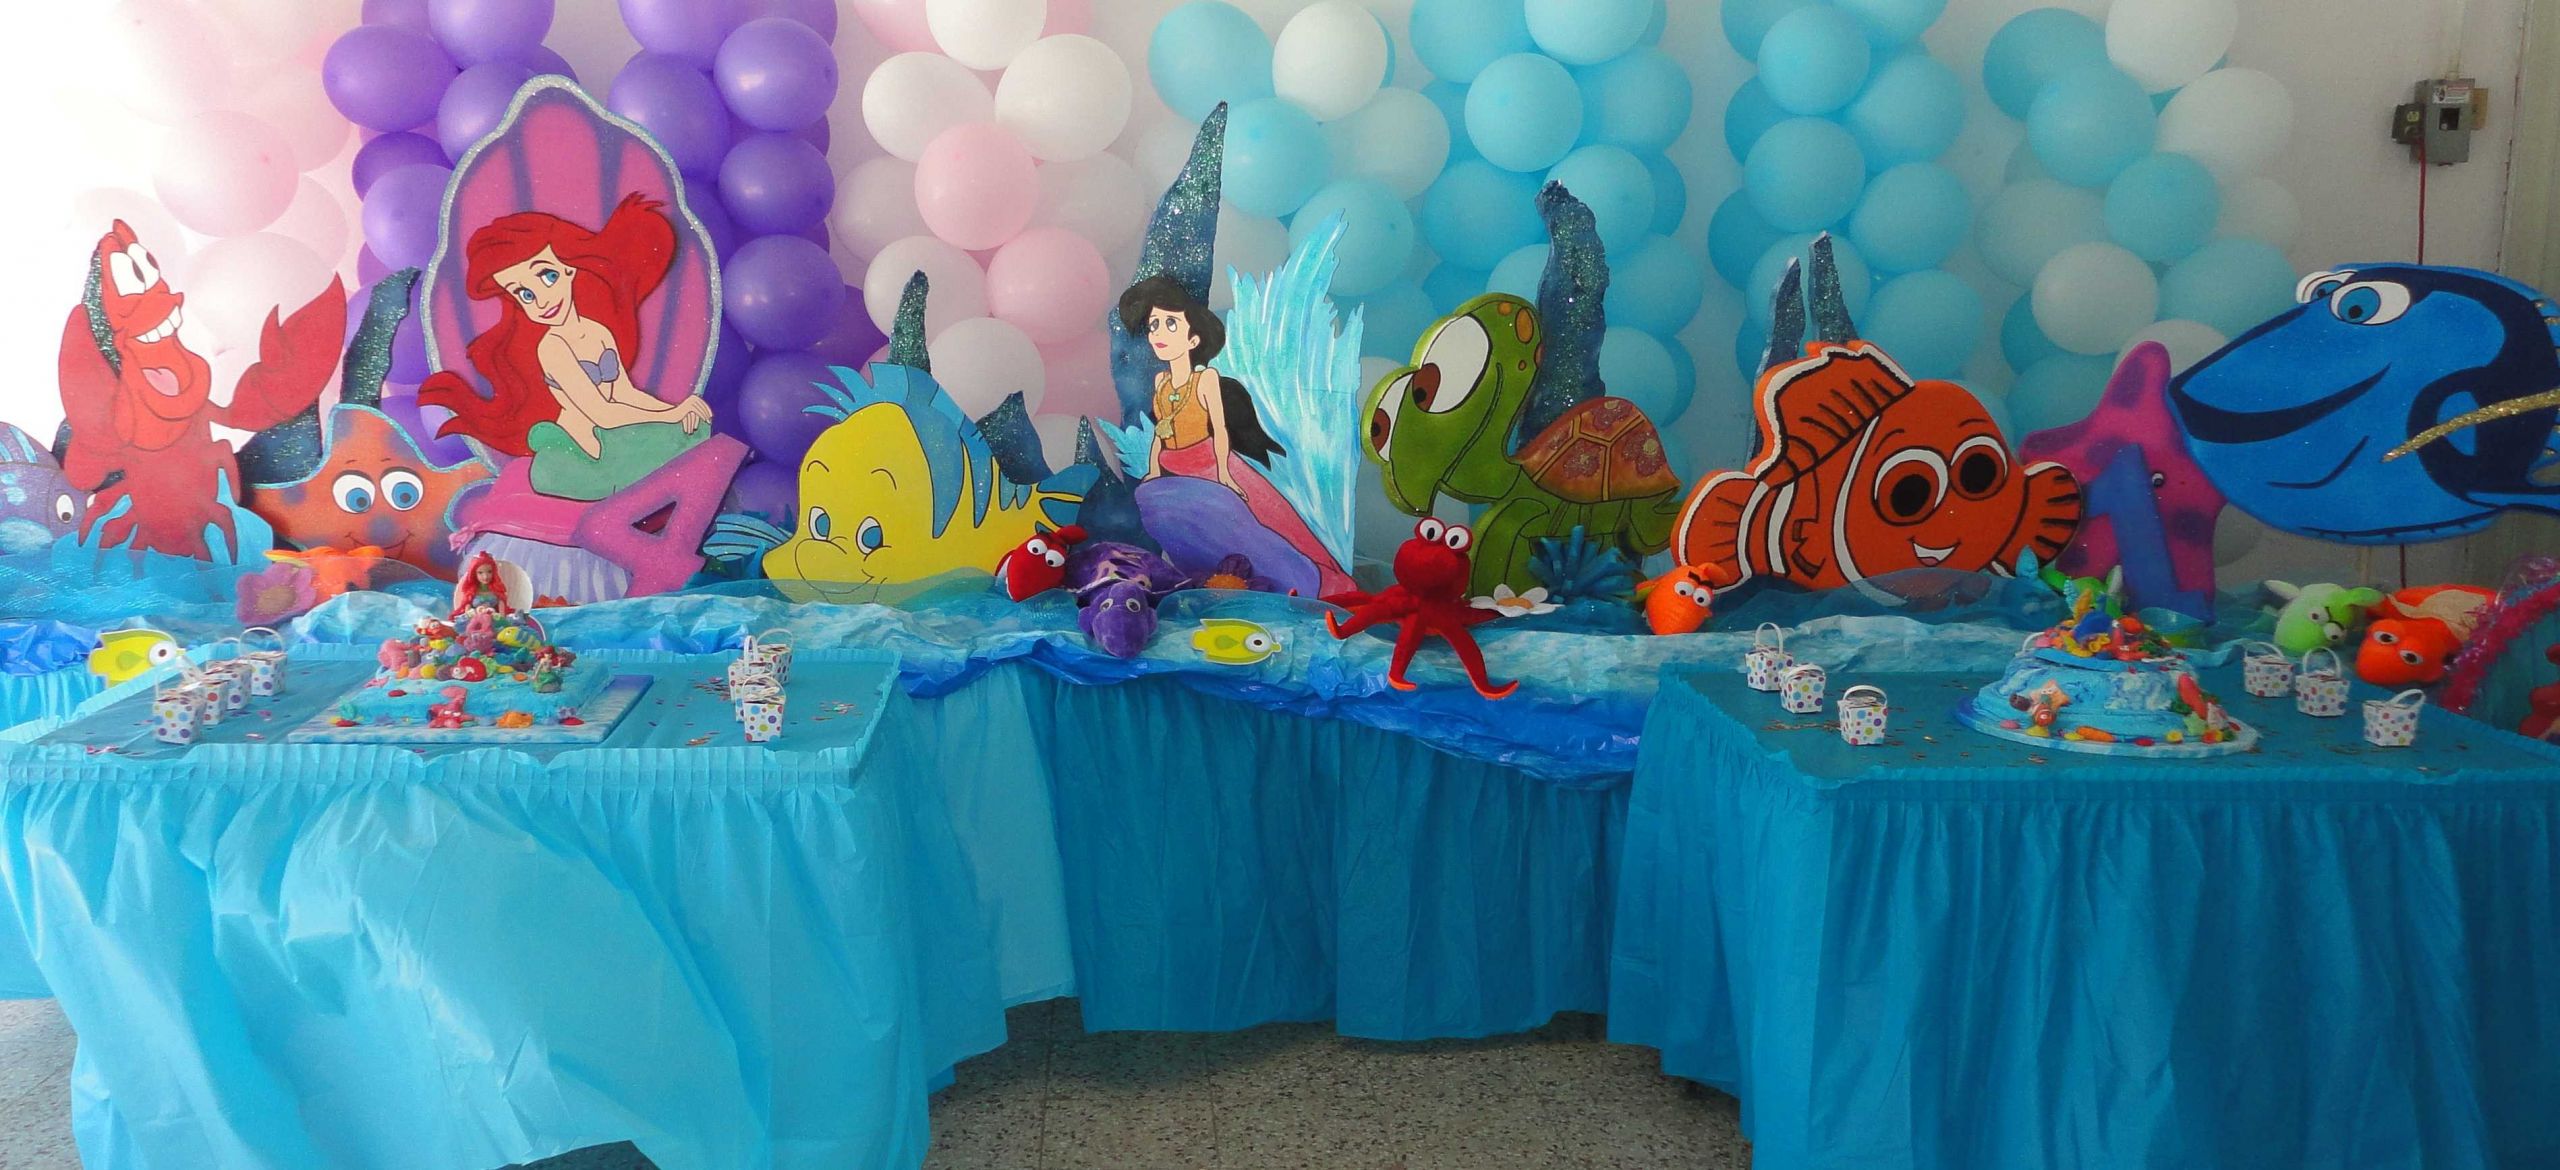 Ariel Little Mermaid Party Ideas
 Disney Little Mermaid Ariel 3 ft Prop Standee